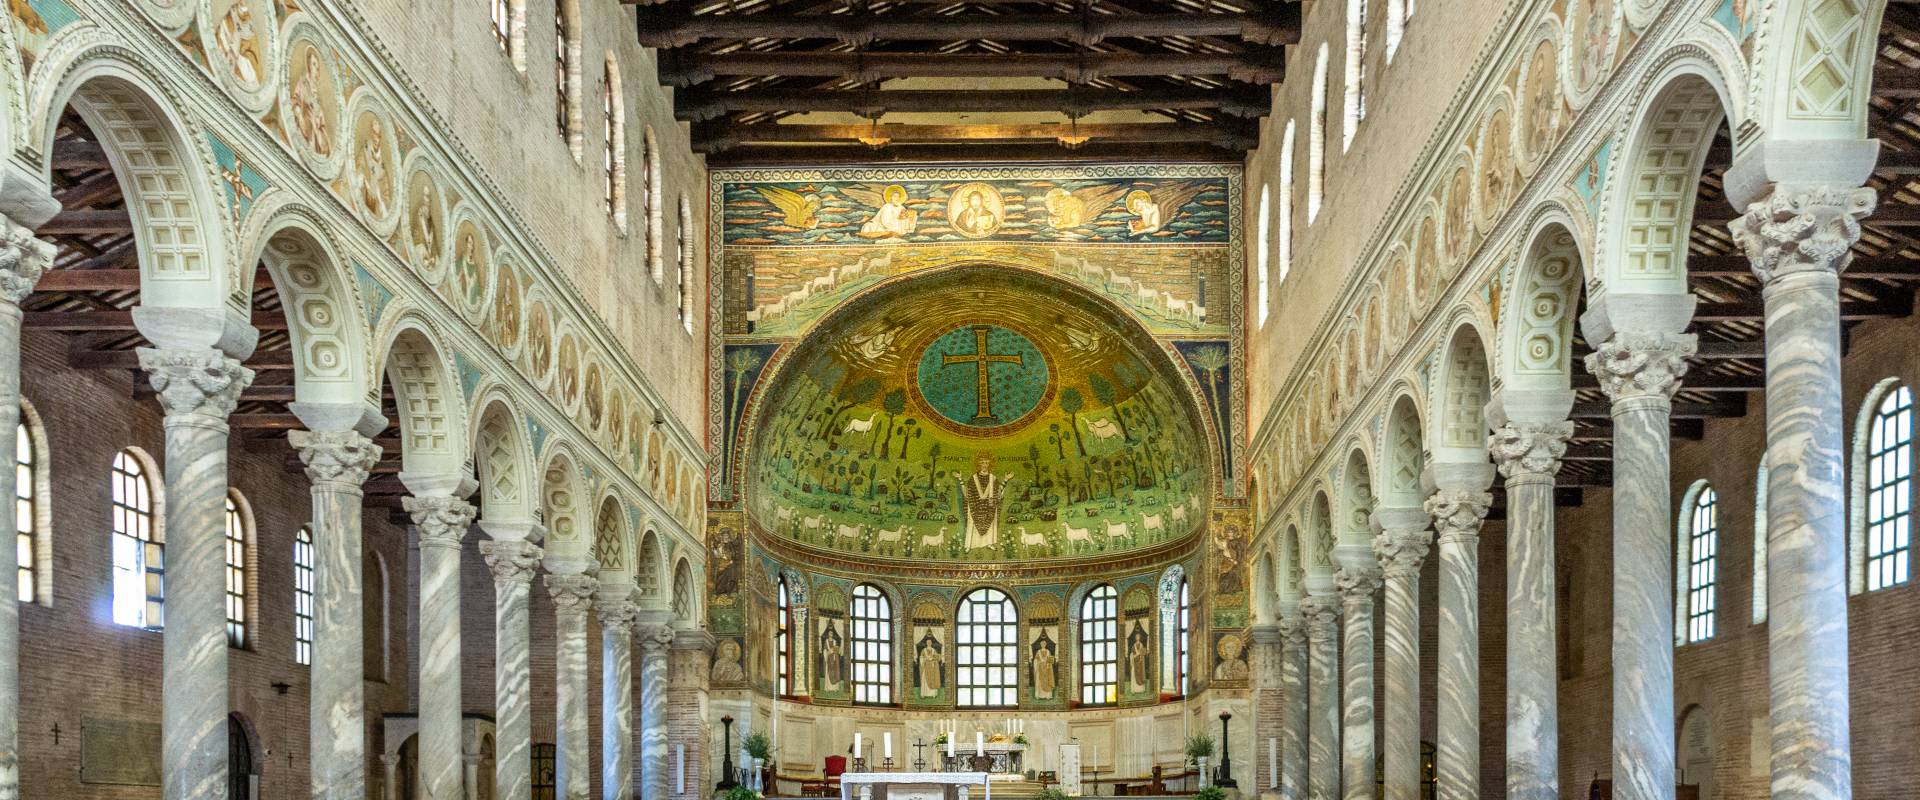 Z013013 Basilica di Sant'Apollinare in Classe - Ravenna - foto di Vanni Lazzari